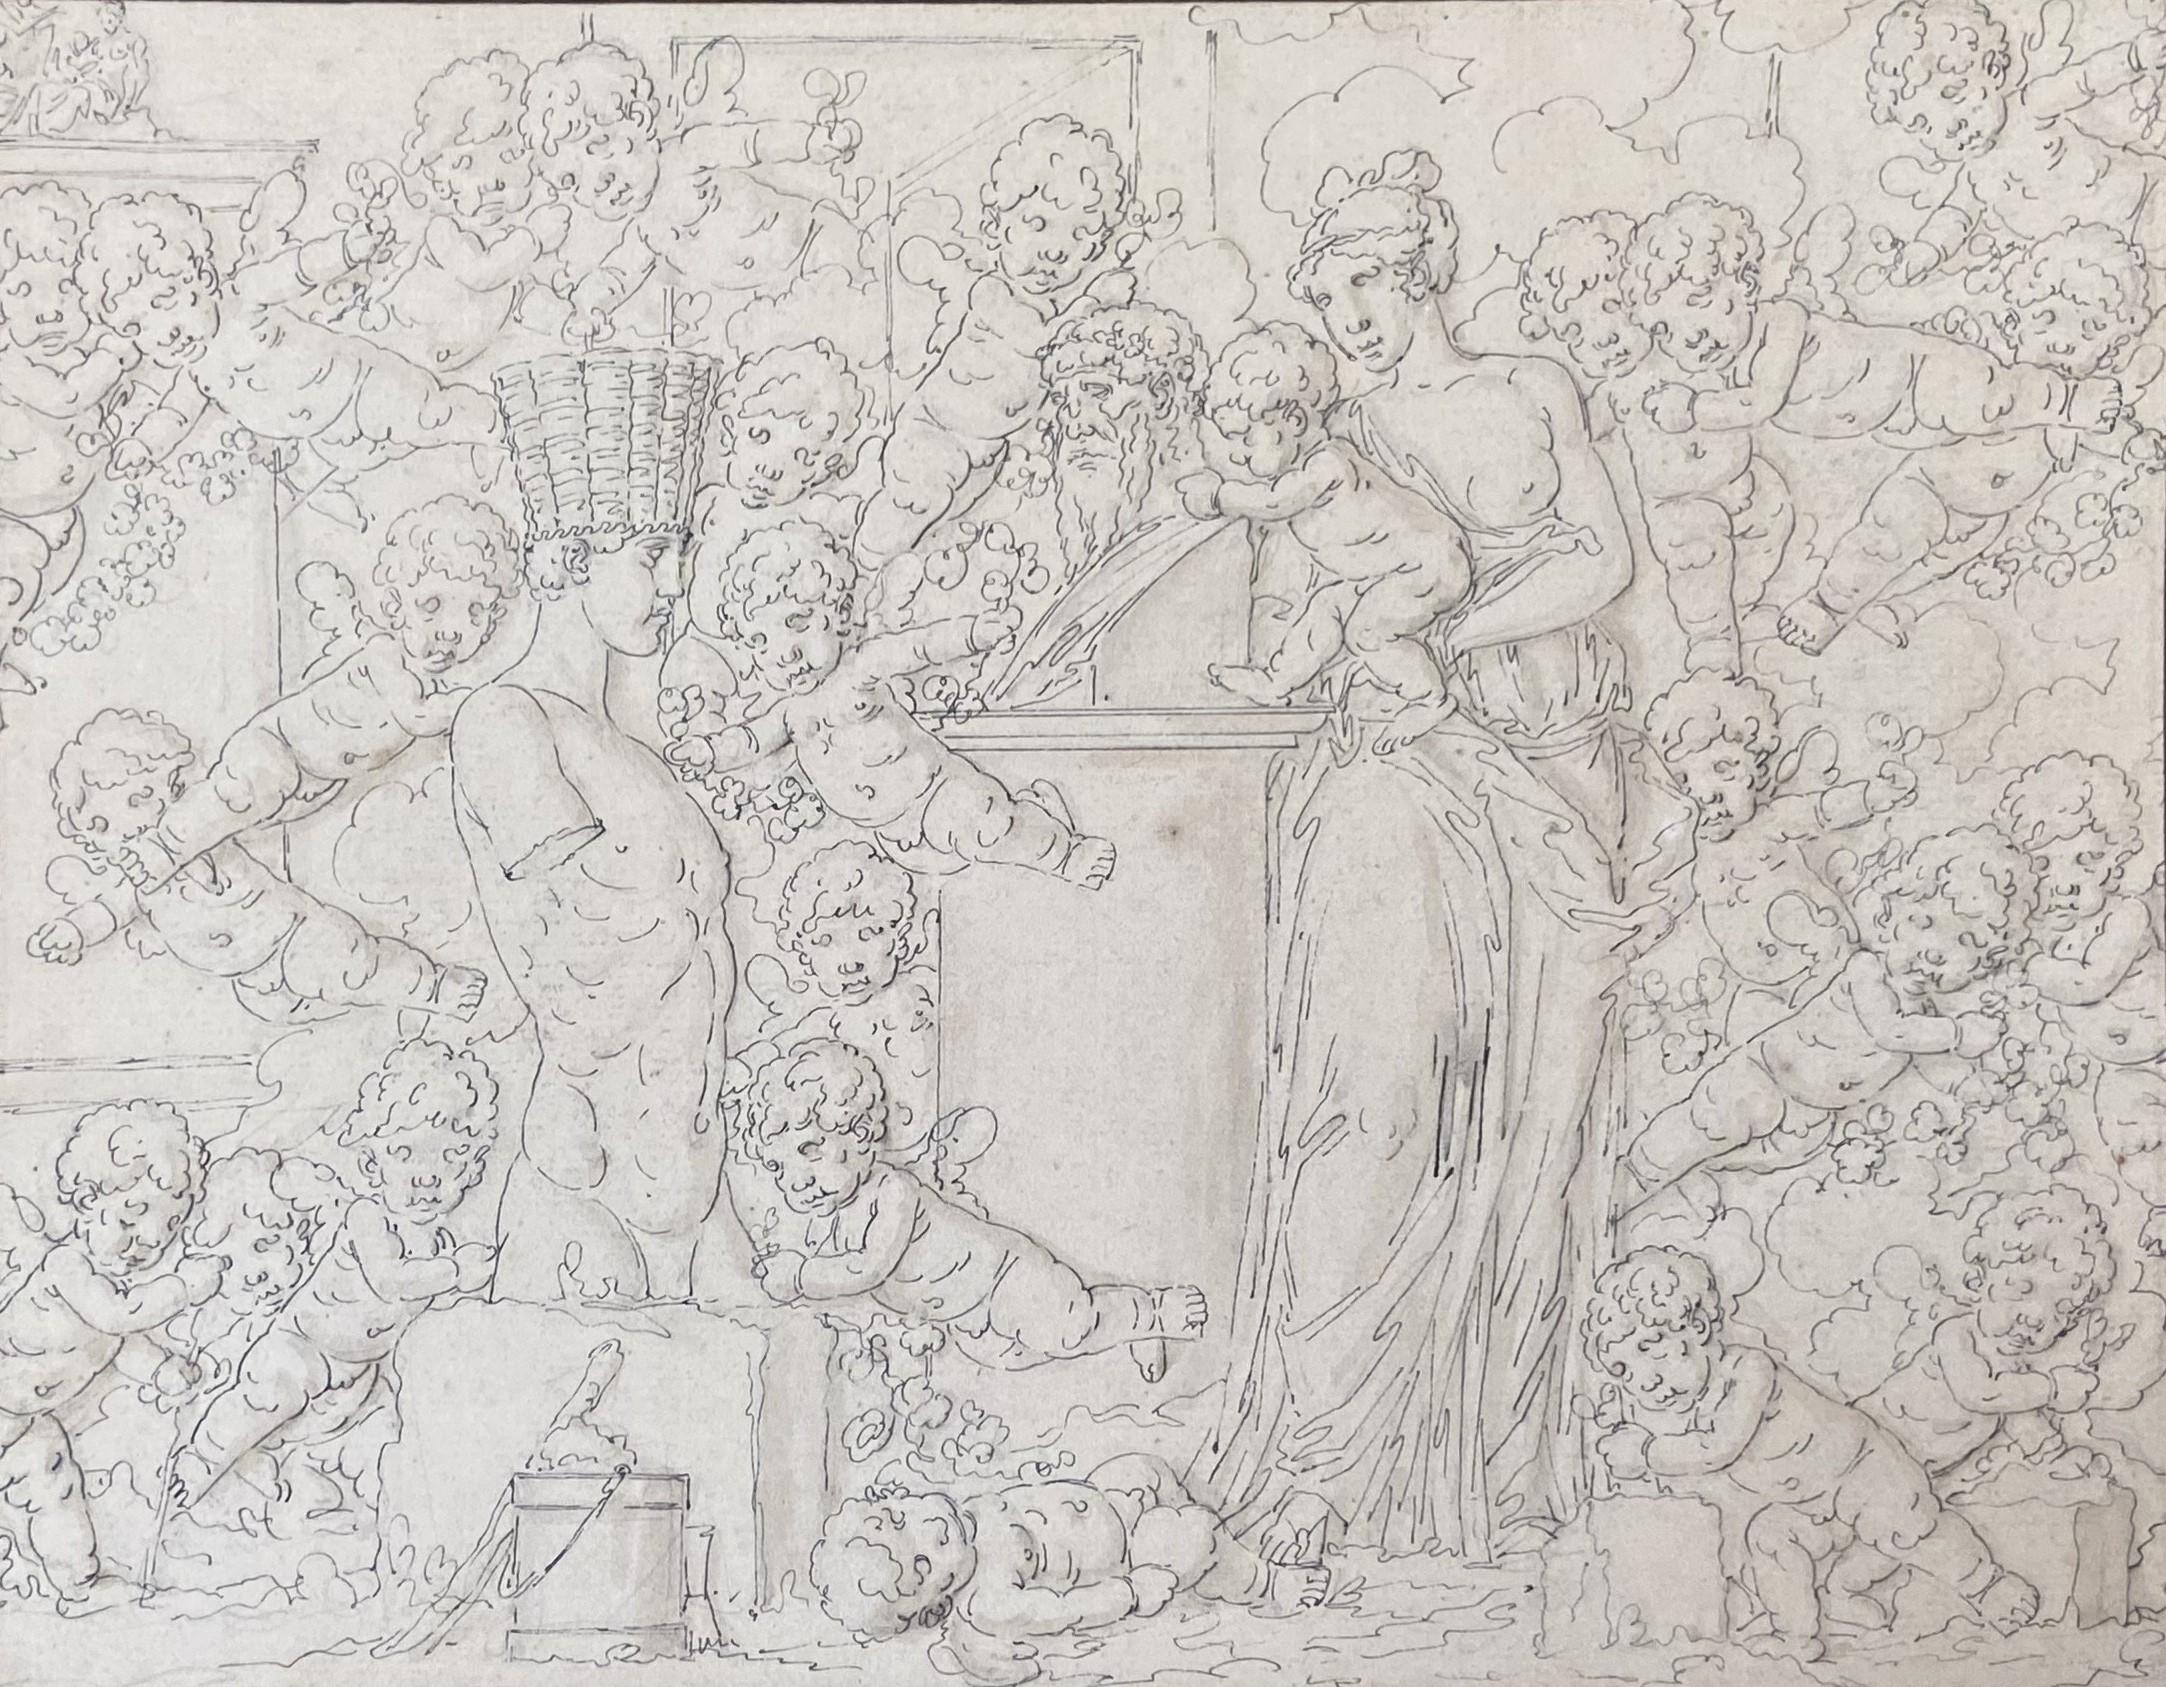 Louis-Félix de La Rue (1730-1777) 
Une scène mythologique
Plume et encre noire sur papier 
Porte une inscription ancienne avec le nom de l'artiste sur le bord inférieur gauche de la monture.
20,7 x 26,3 cm
En bon  état, une petite rousseur au milieu